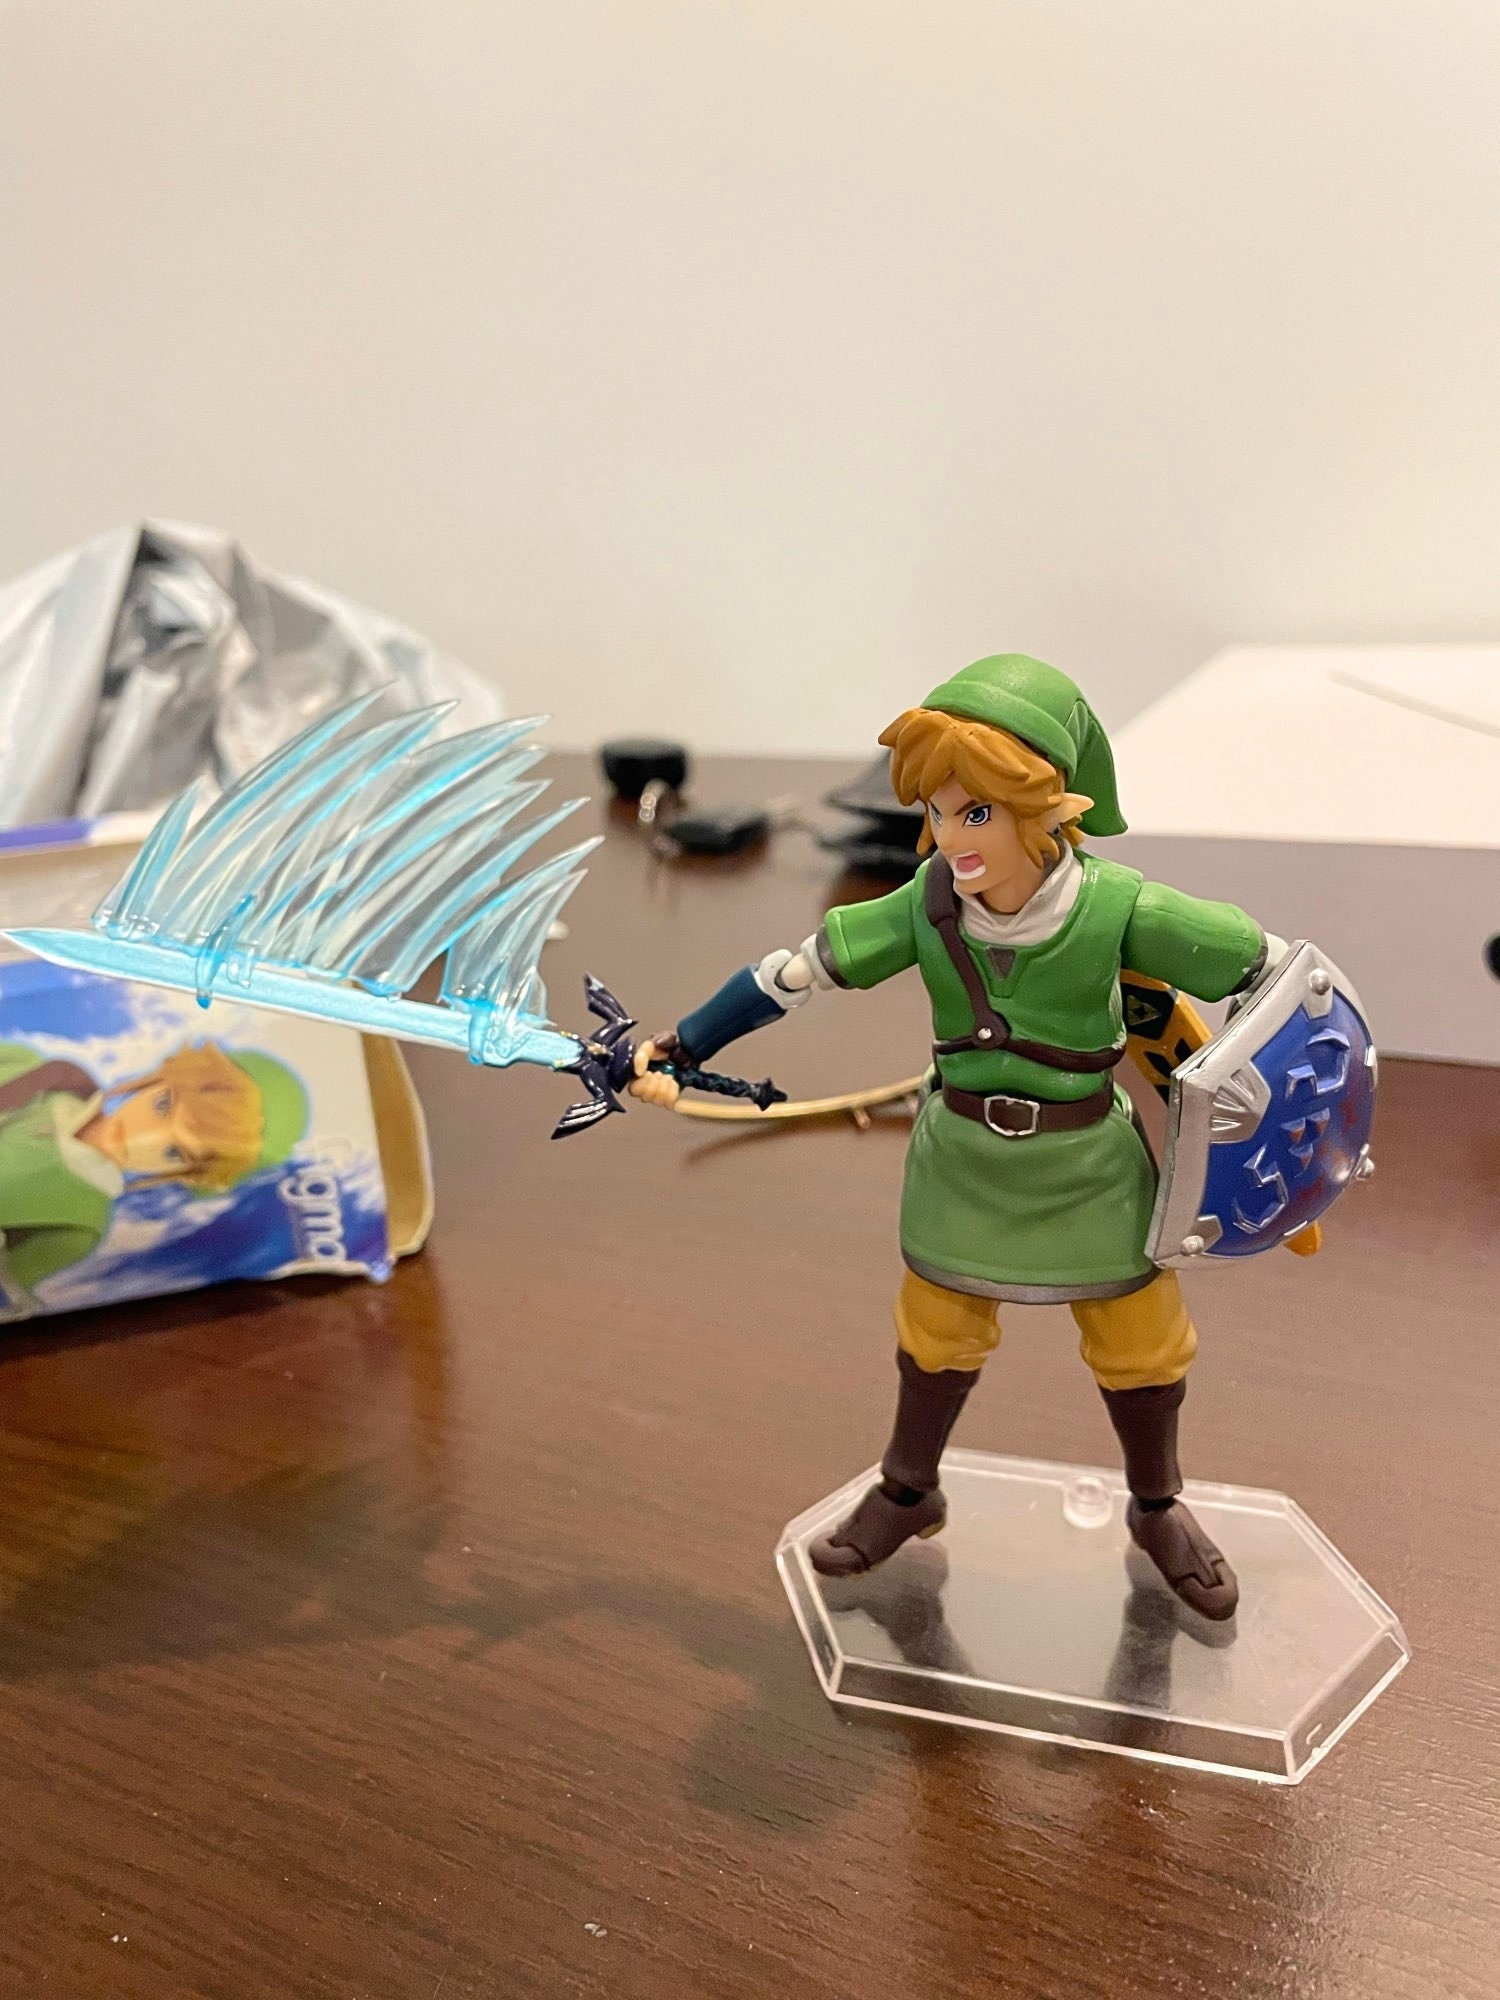 Link Action Figure 4 High Legend Of Zelda Ocarina Of Time